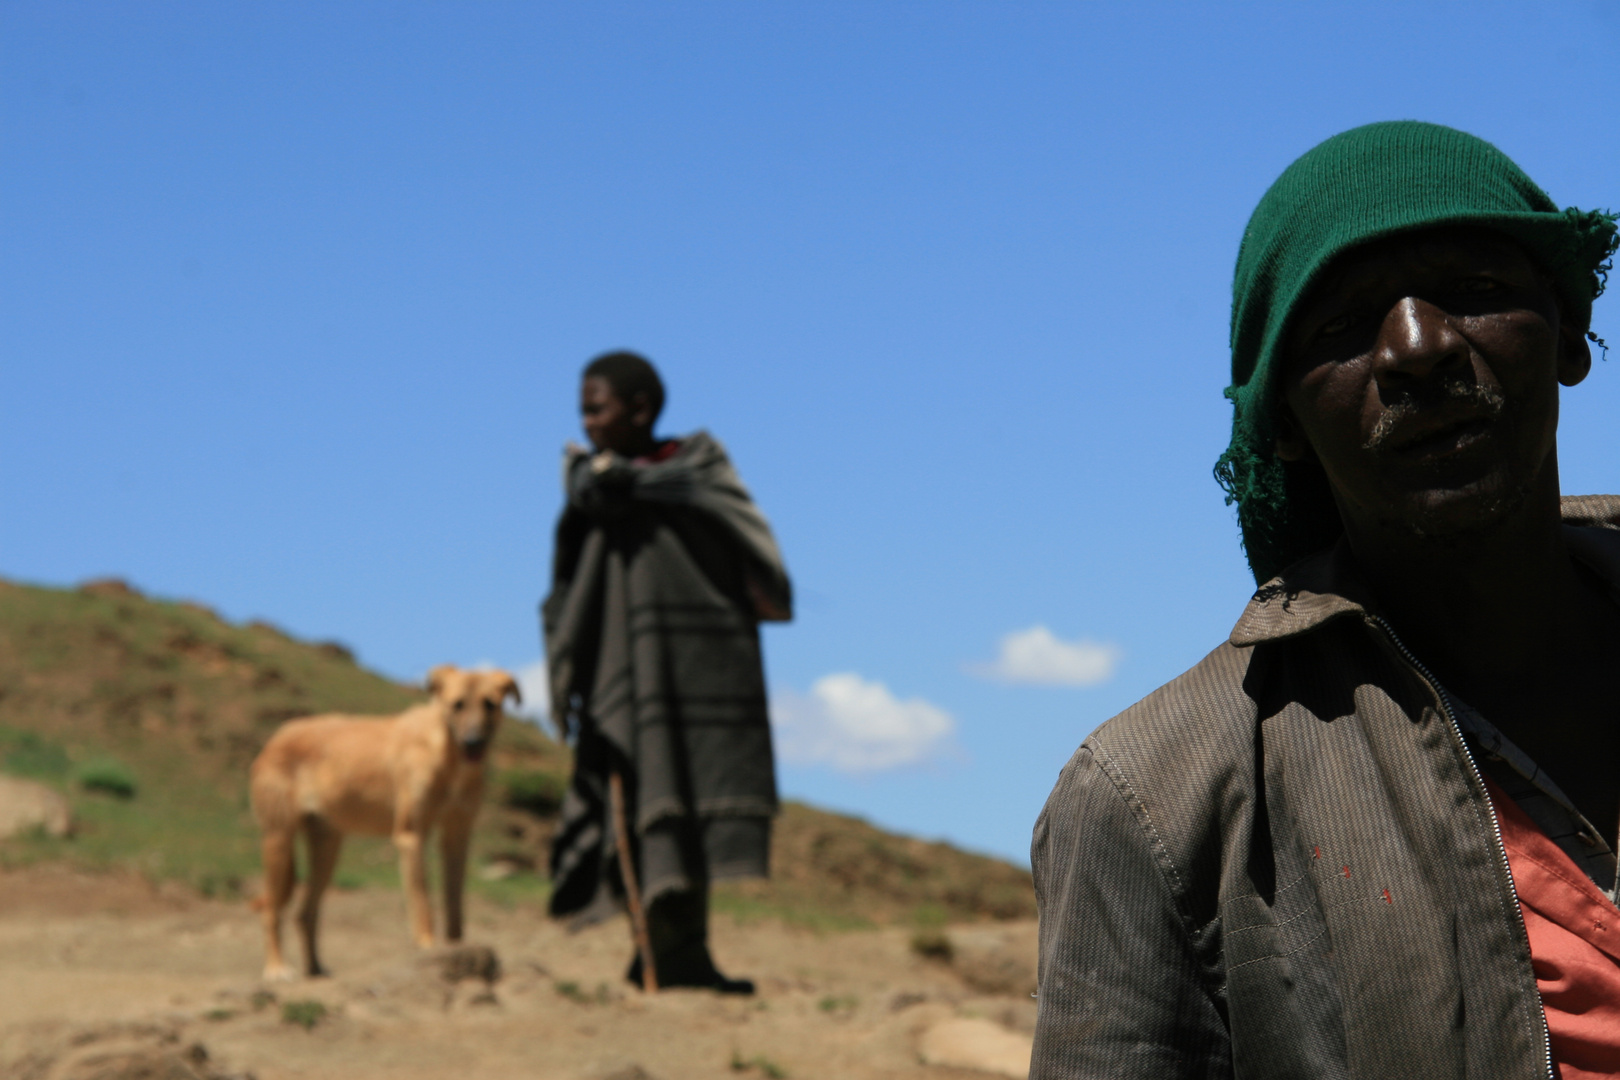 Lesotho people